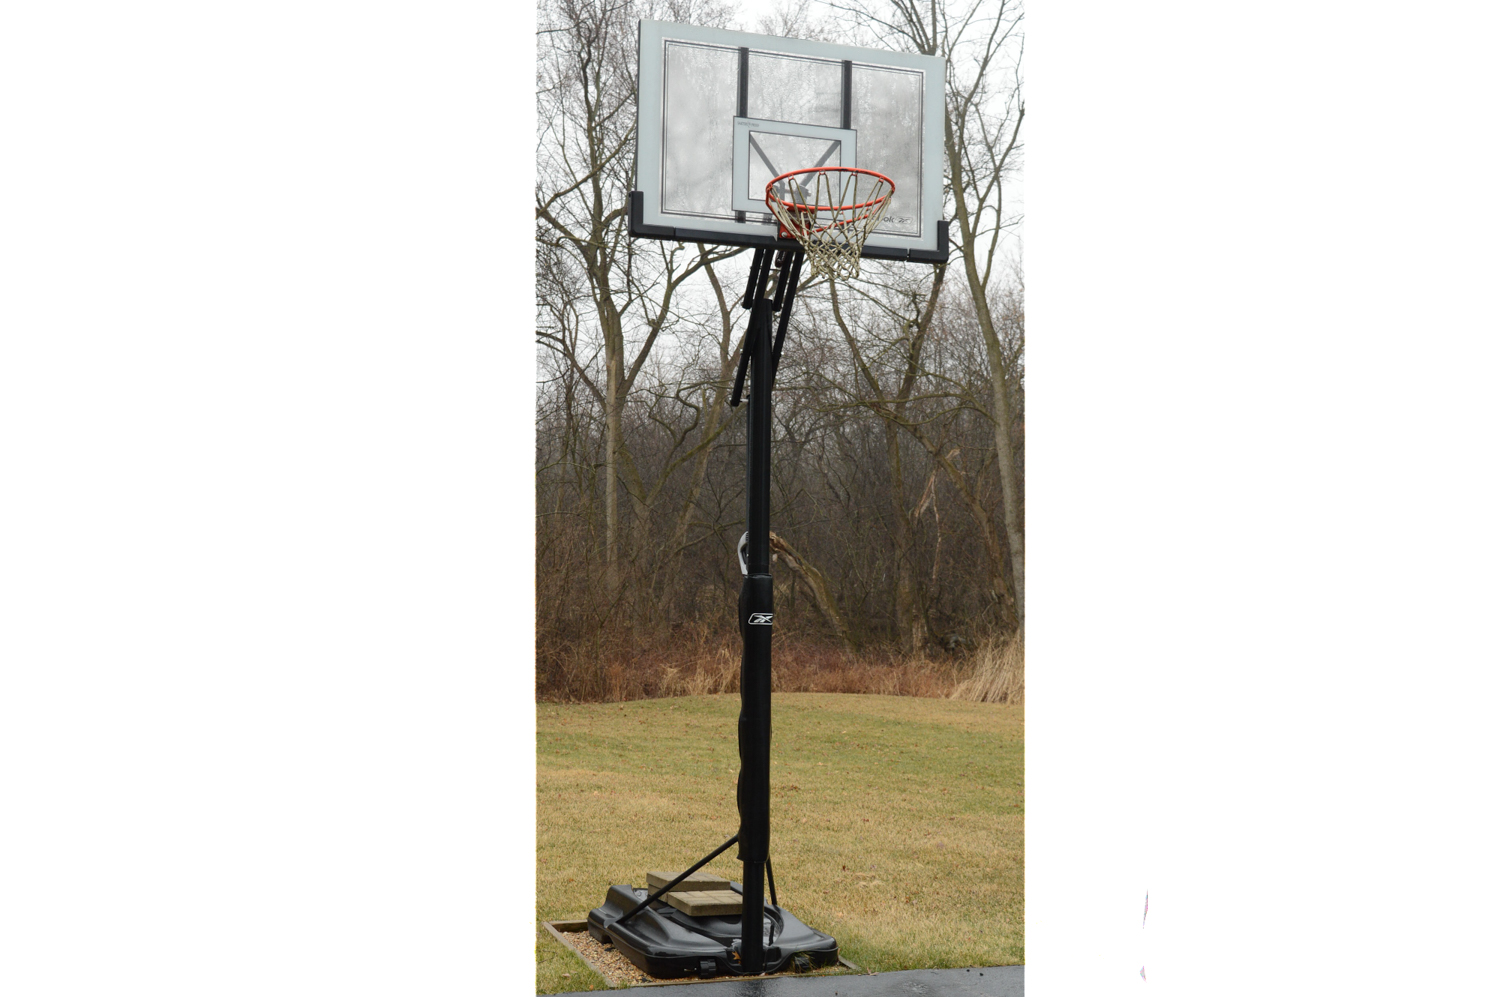 reebok basketball hoop in ground